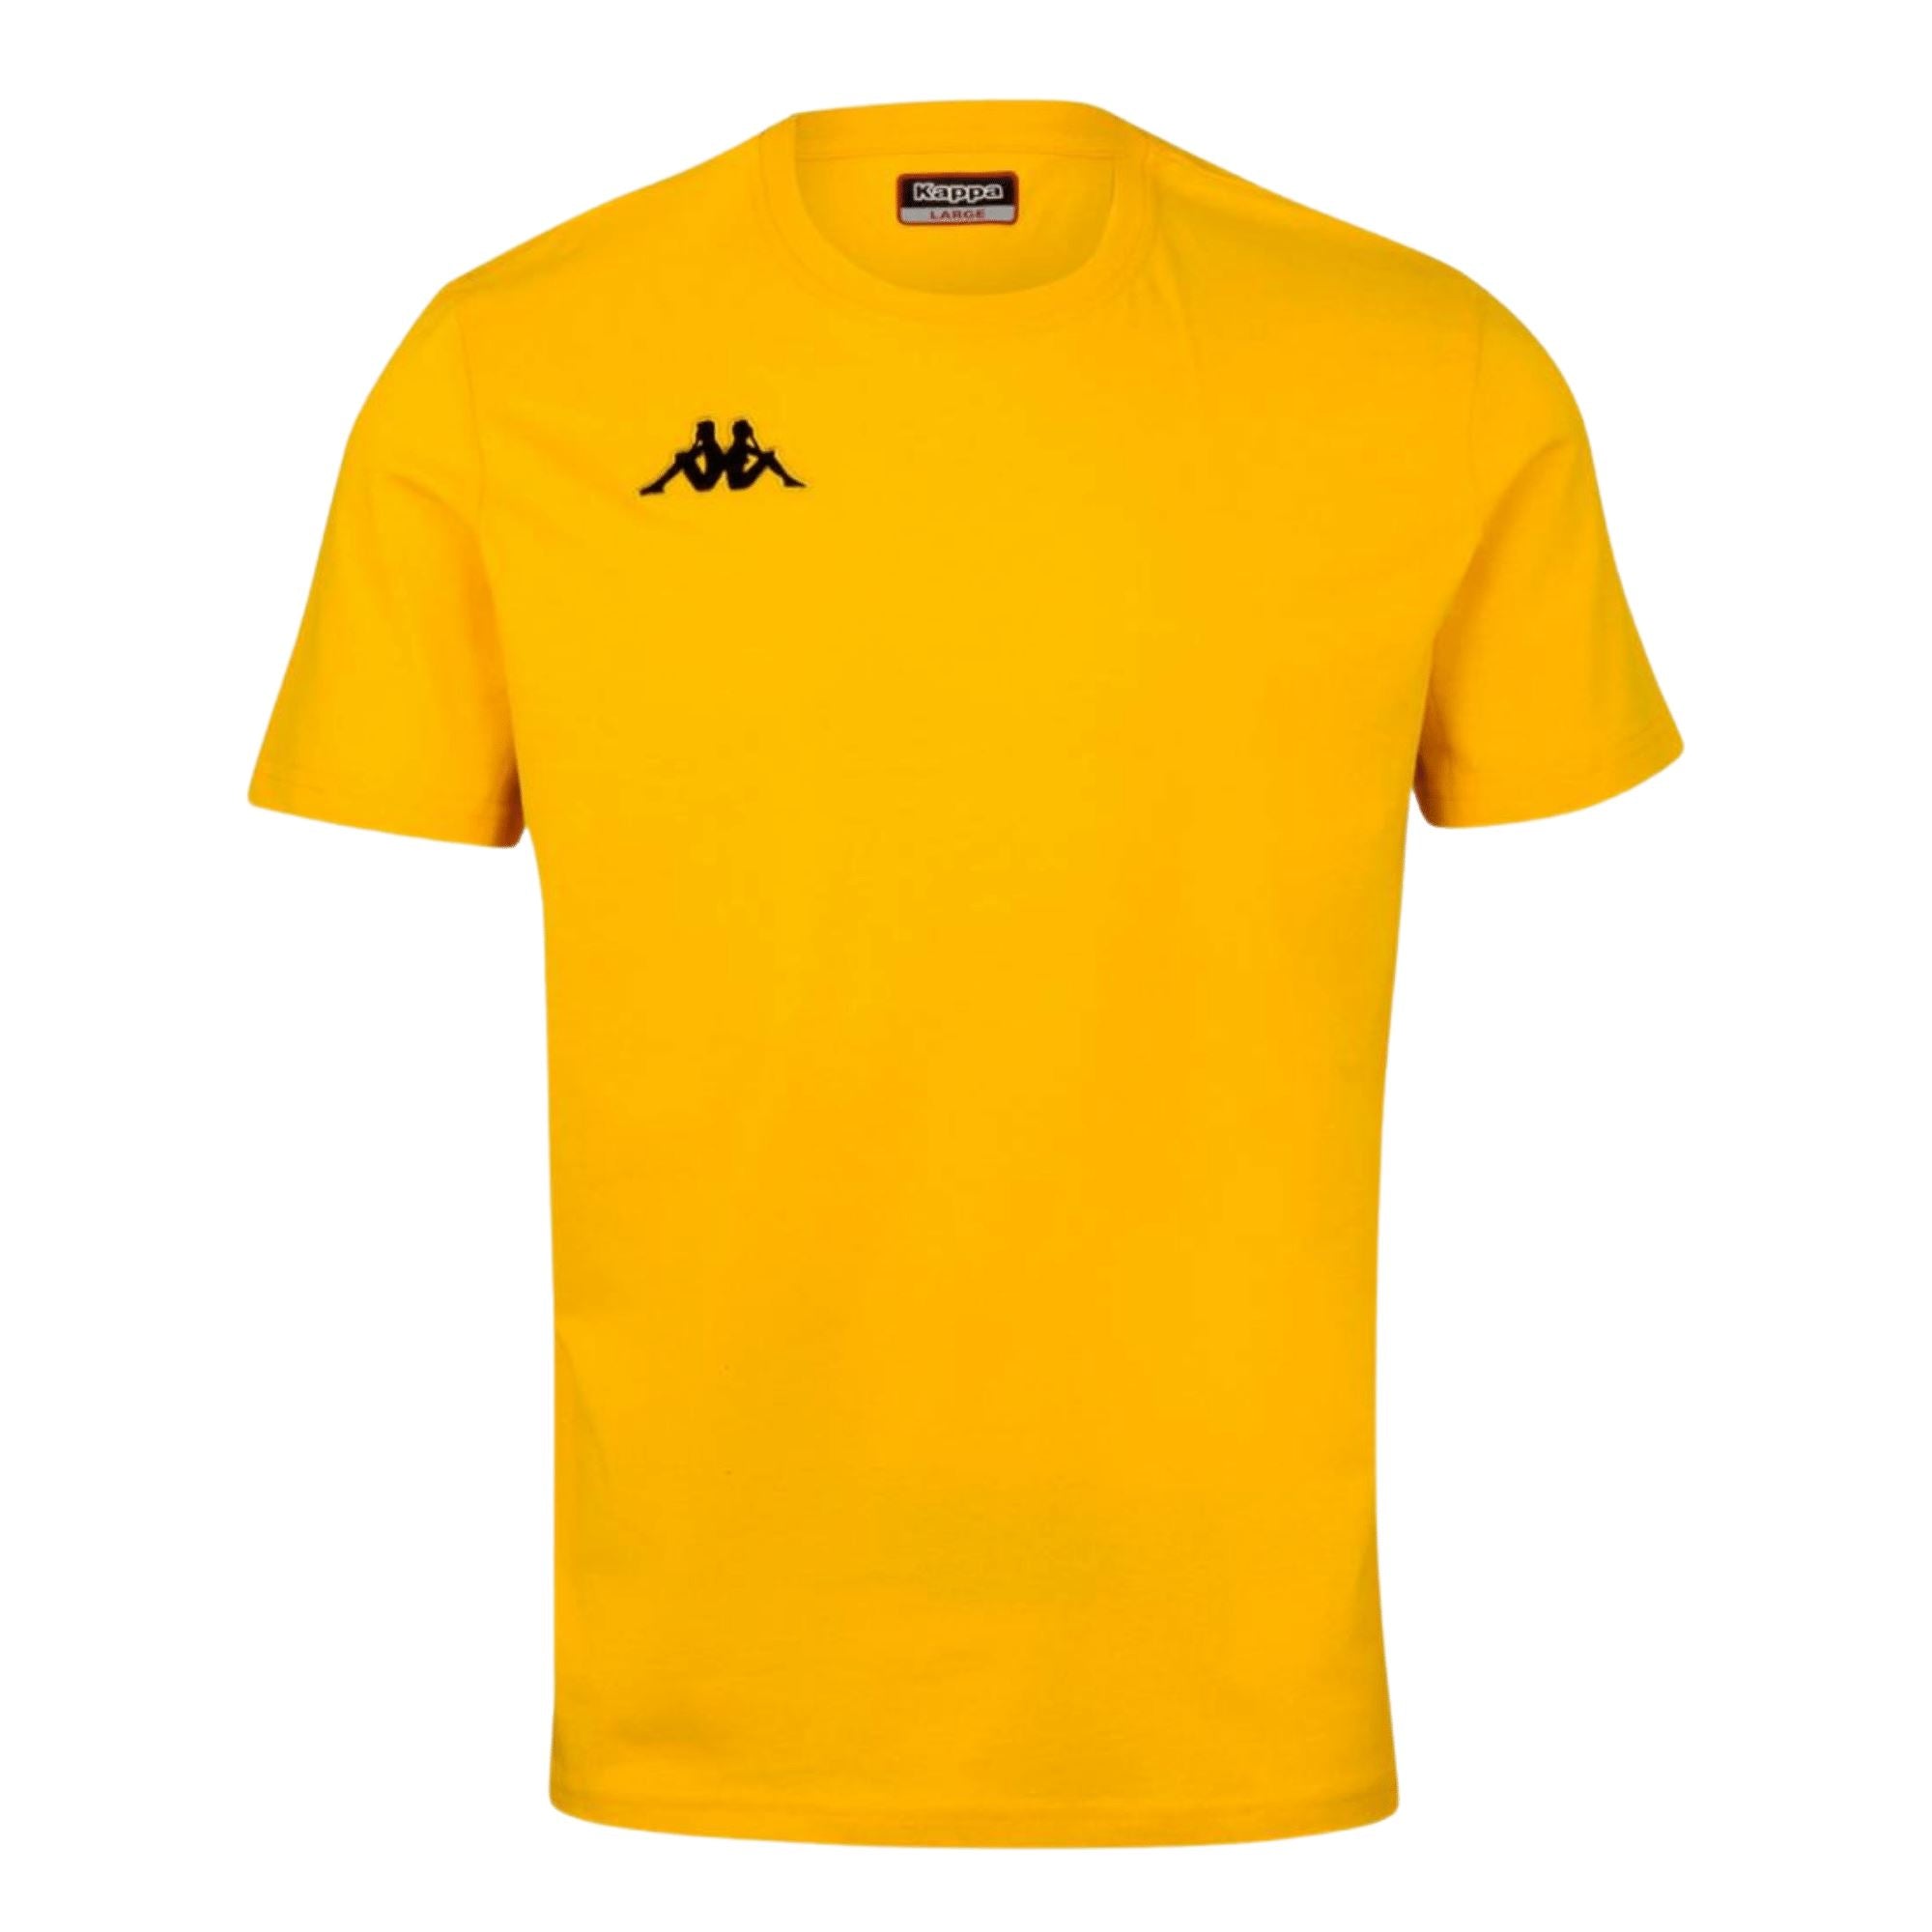 Kappa Meleto T-Shirt Yellow - ITASPORT